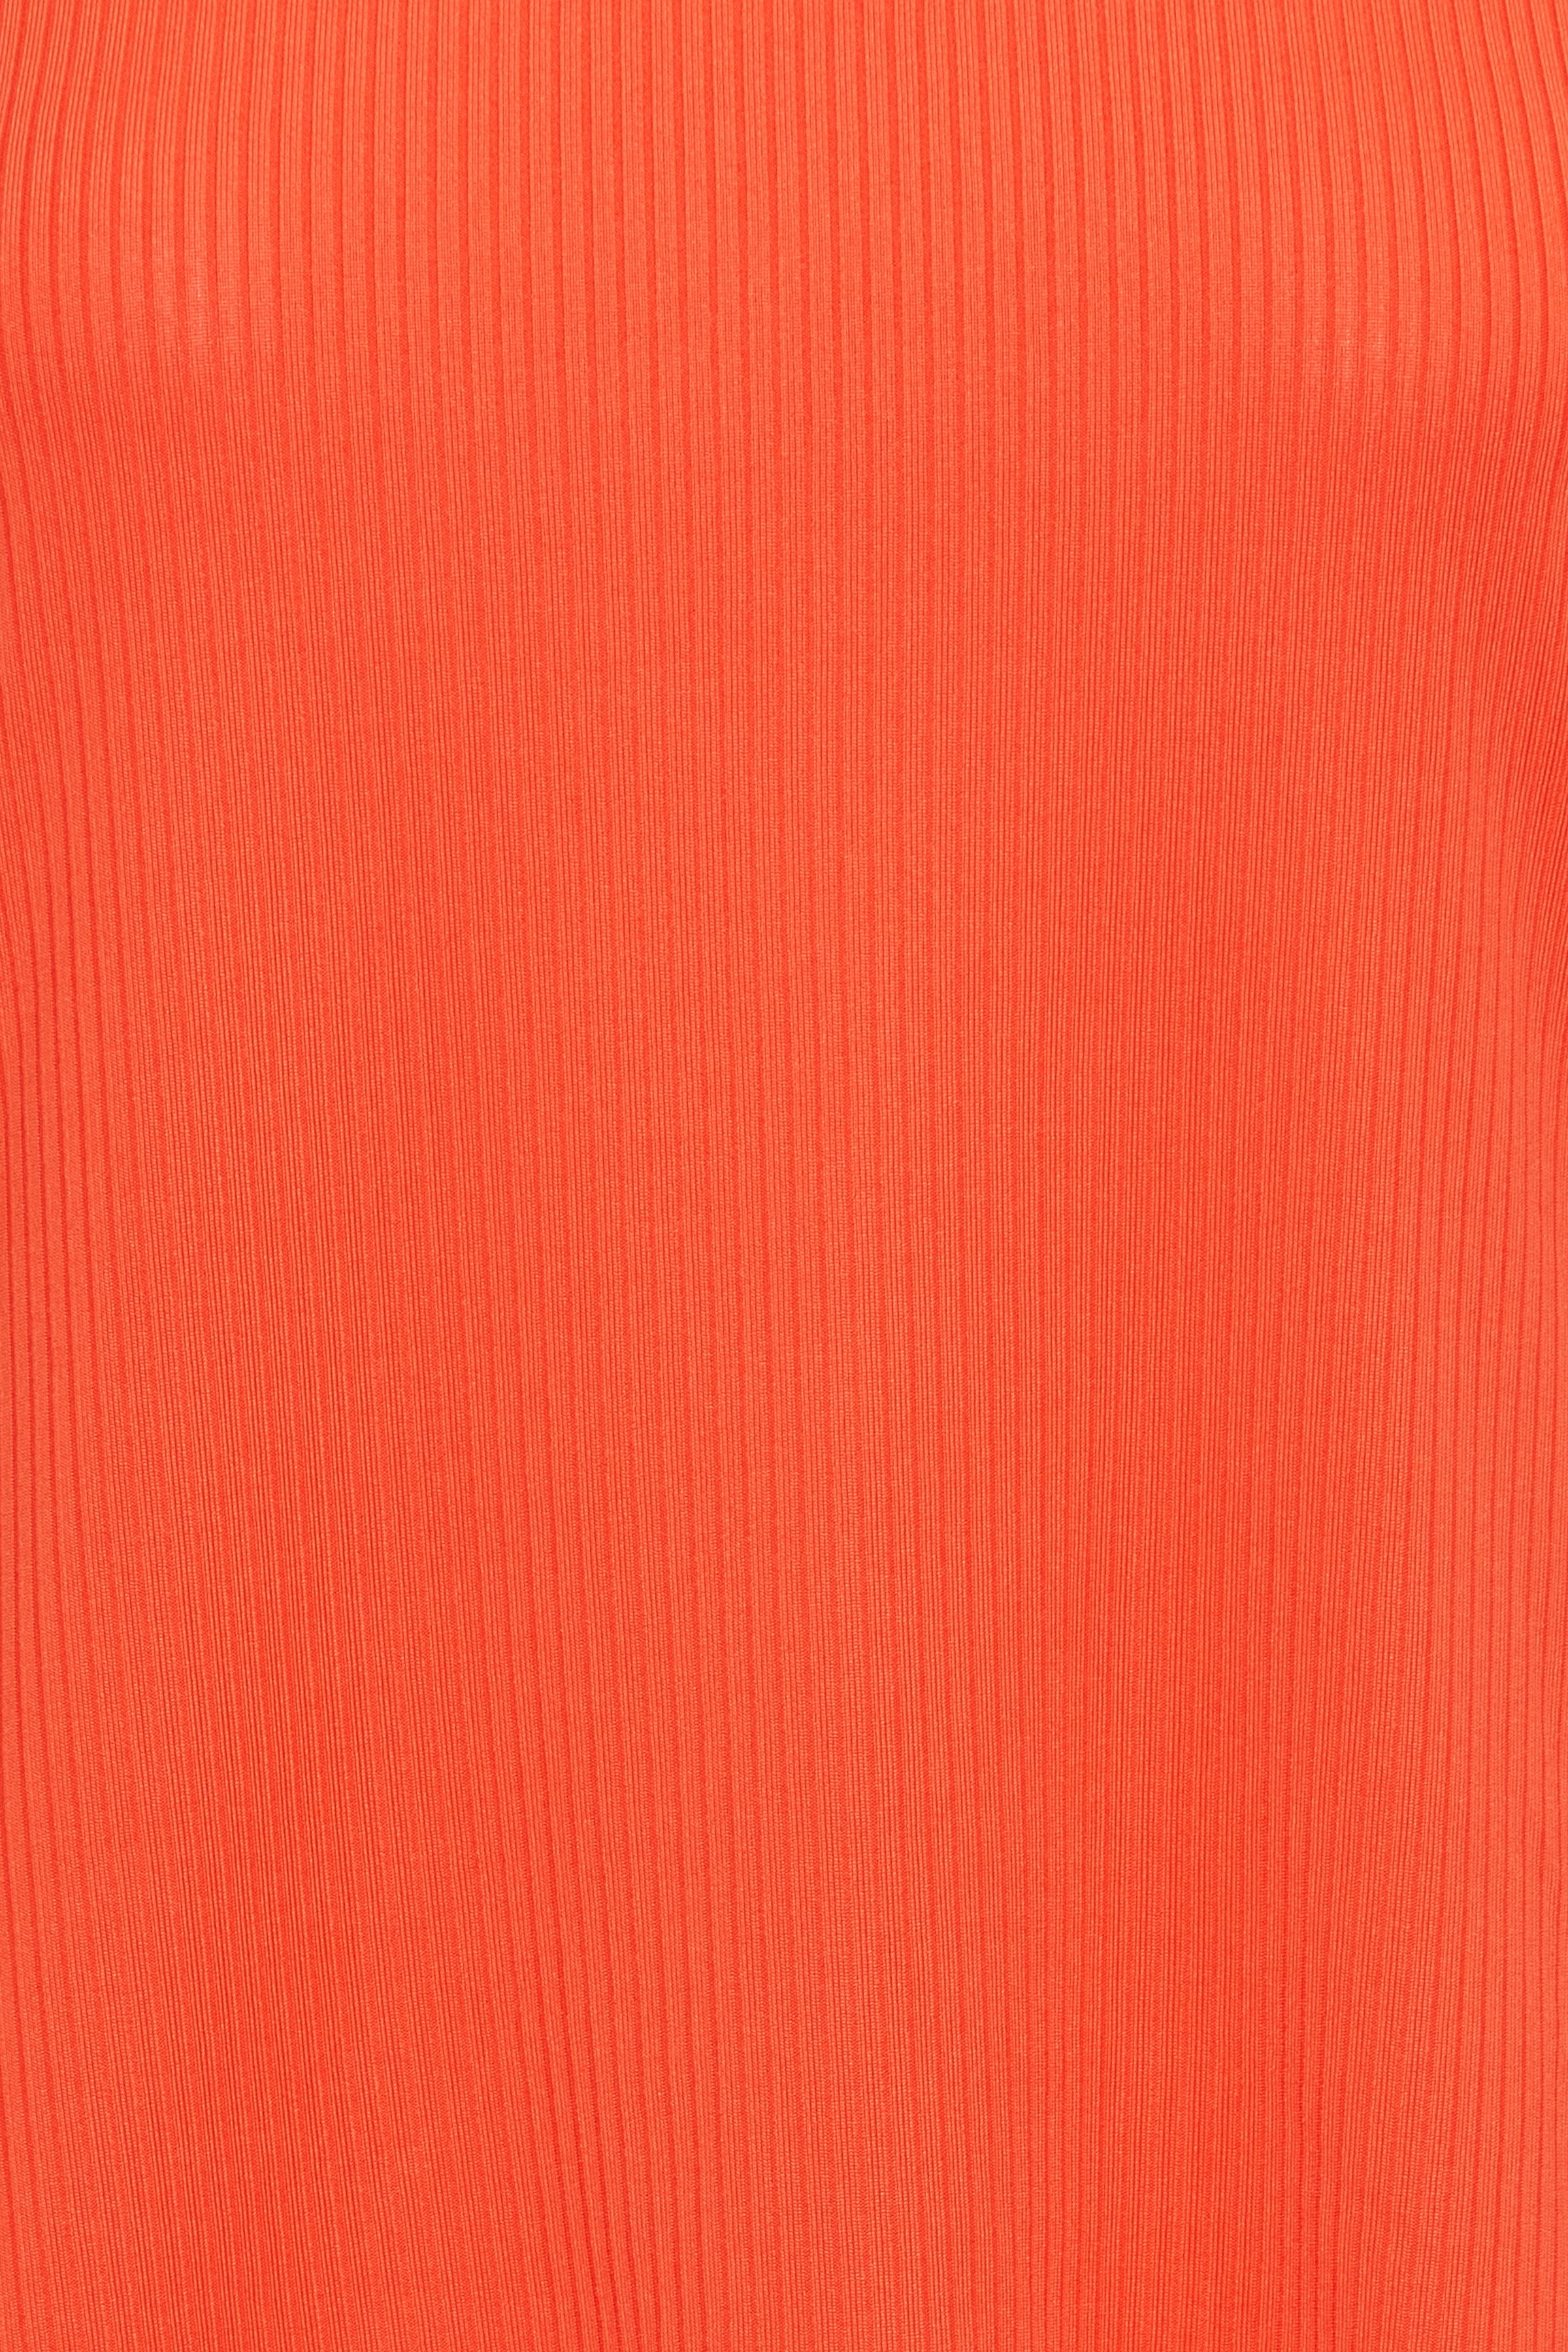 Inari Sleeveless Top (Mandarin Red)